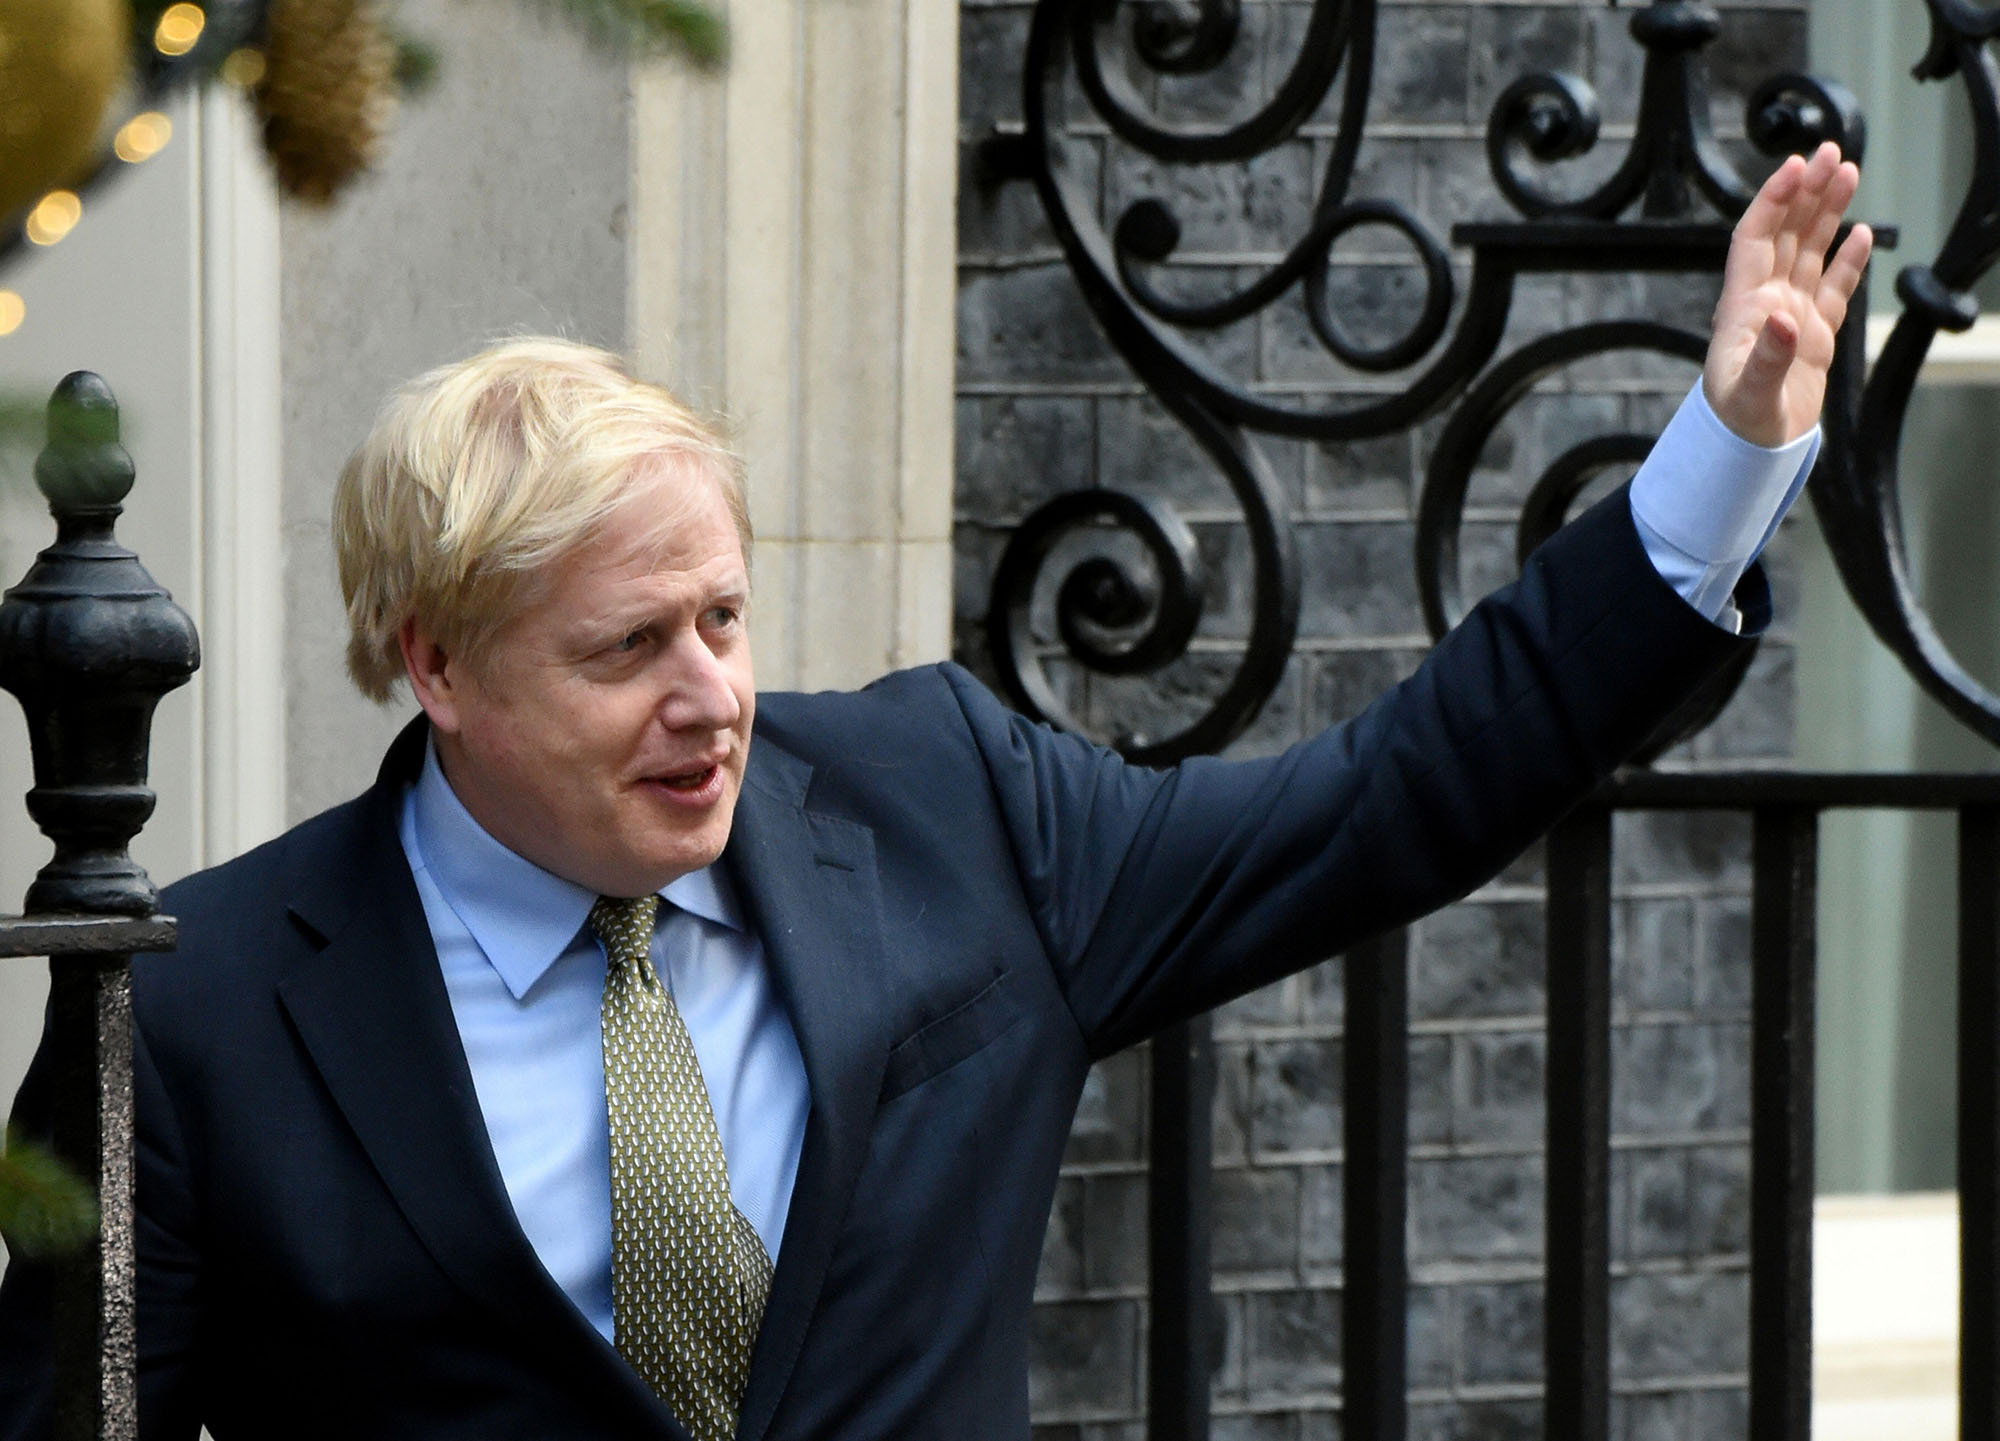 Boris Johnson waving outside no10